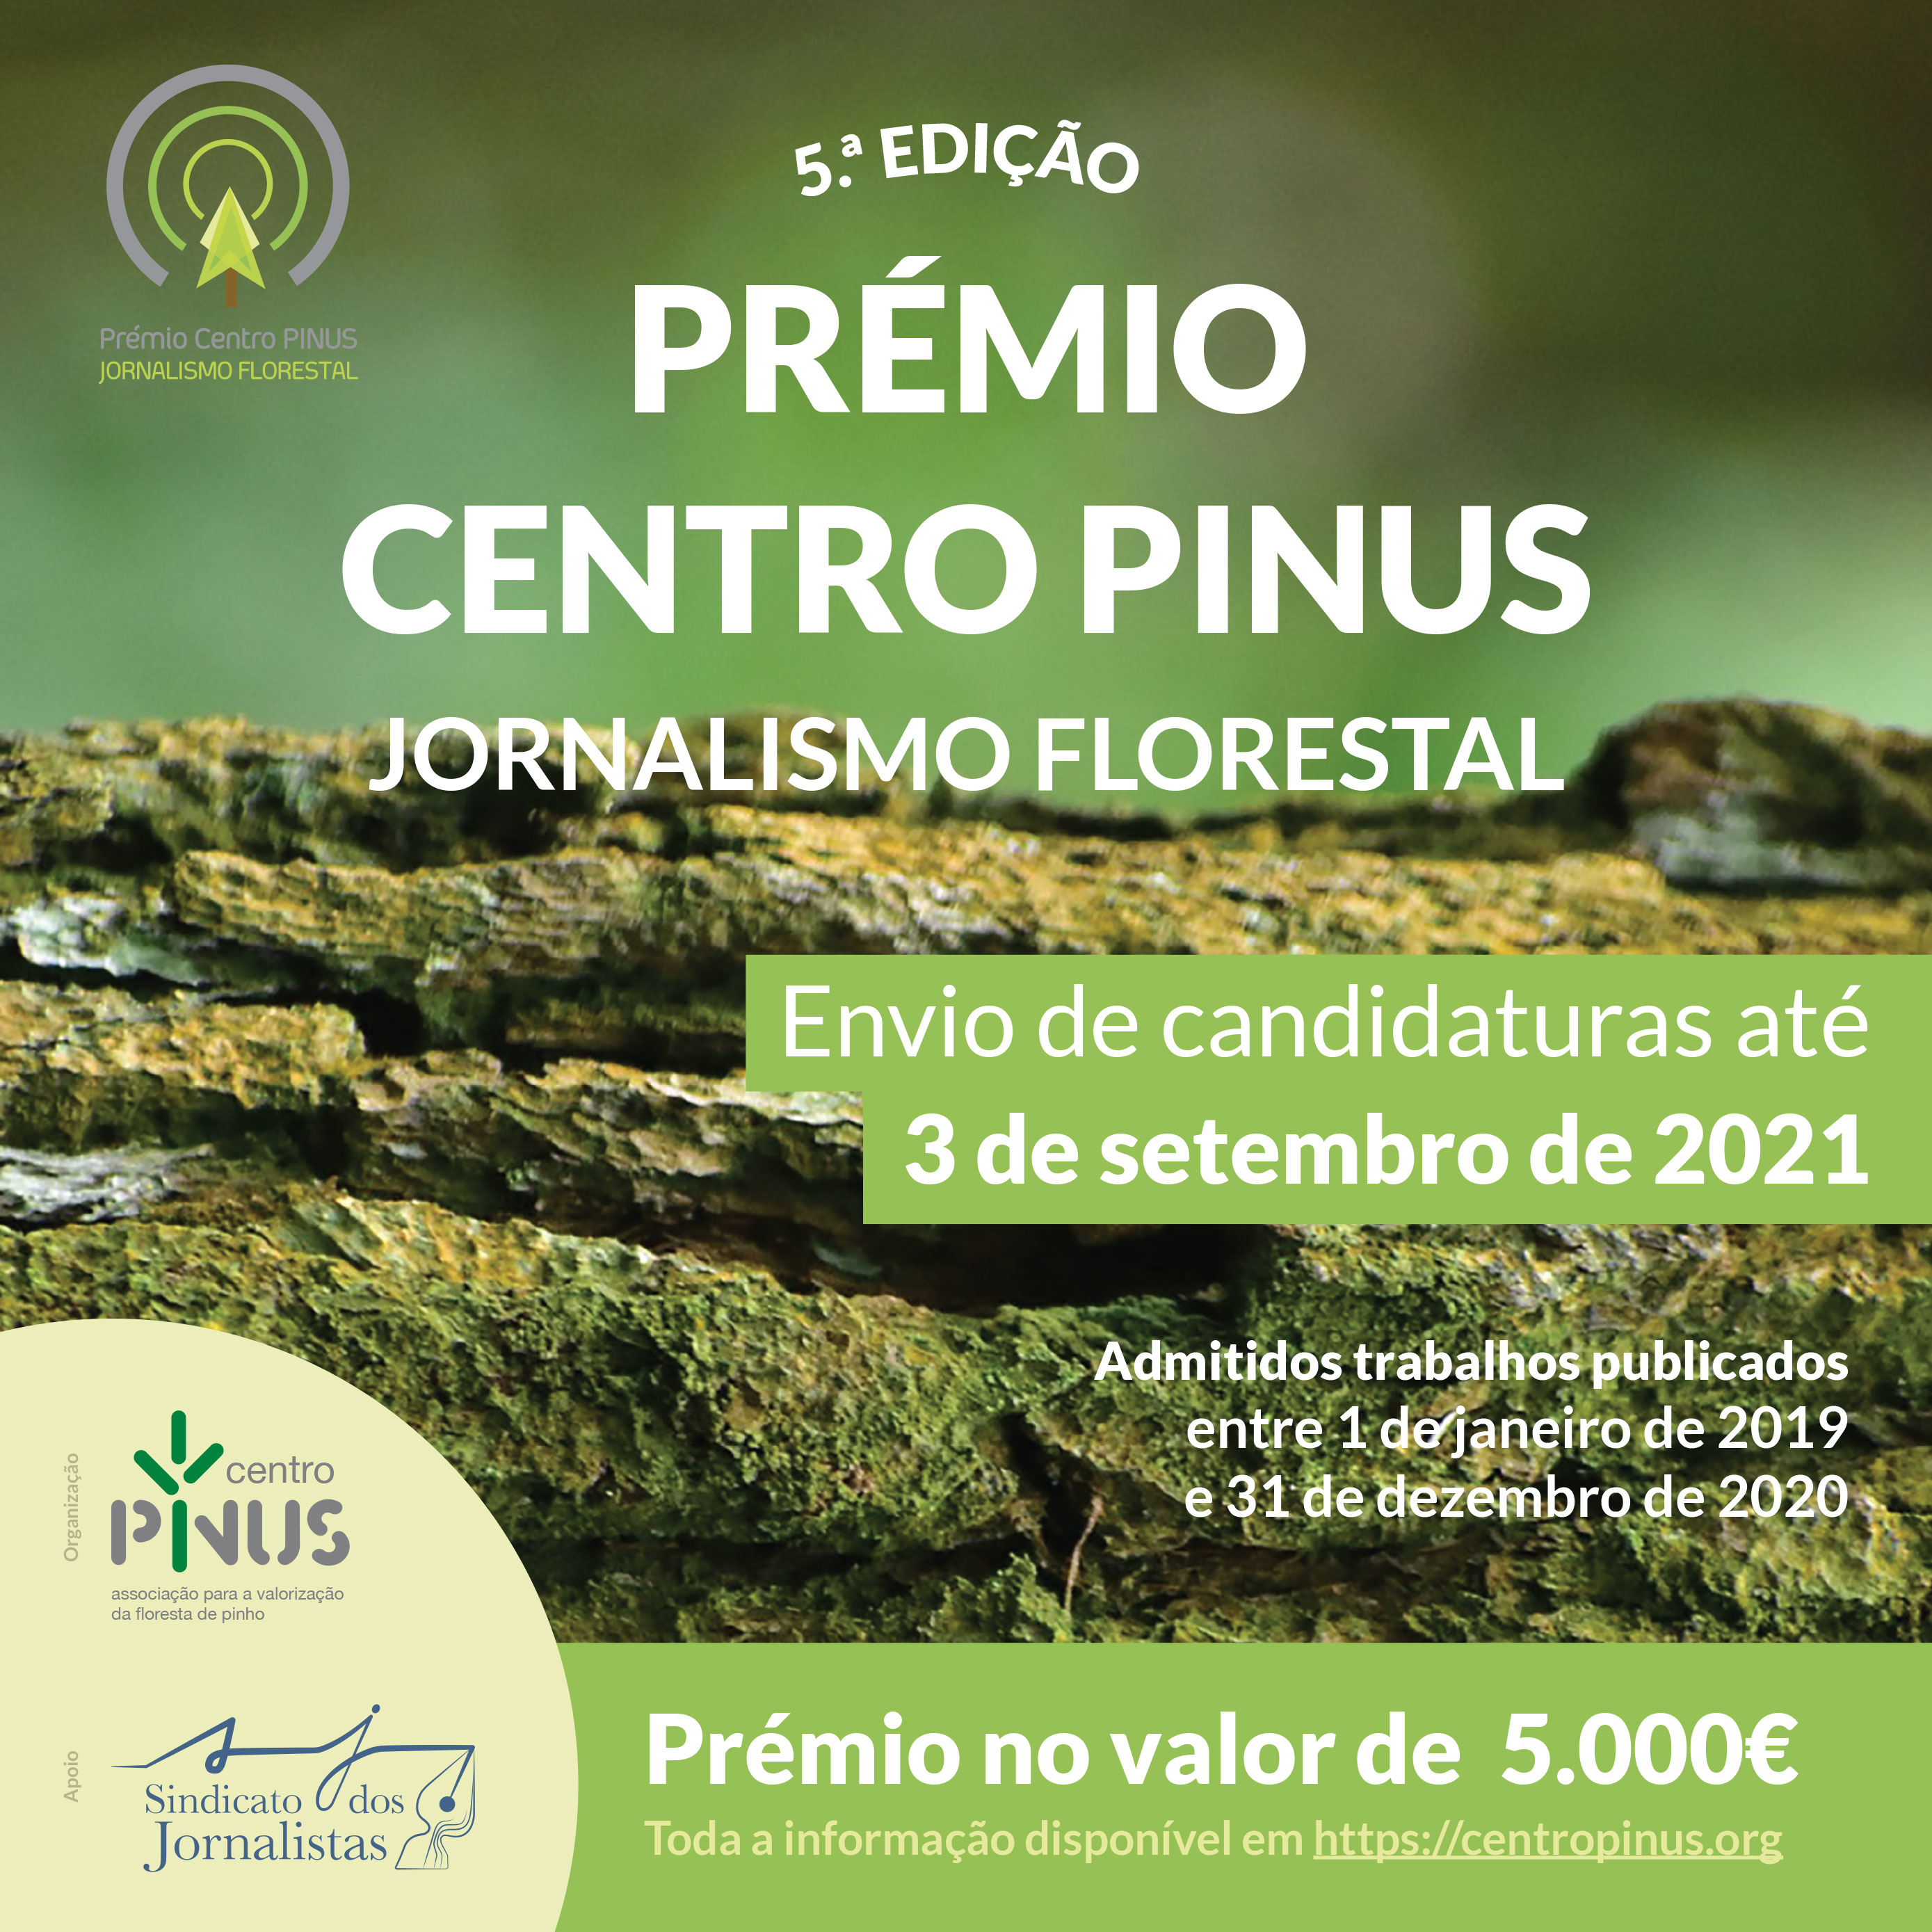 CentroPinus premios 2021